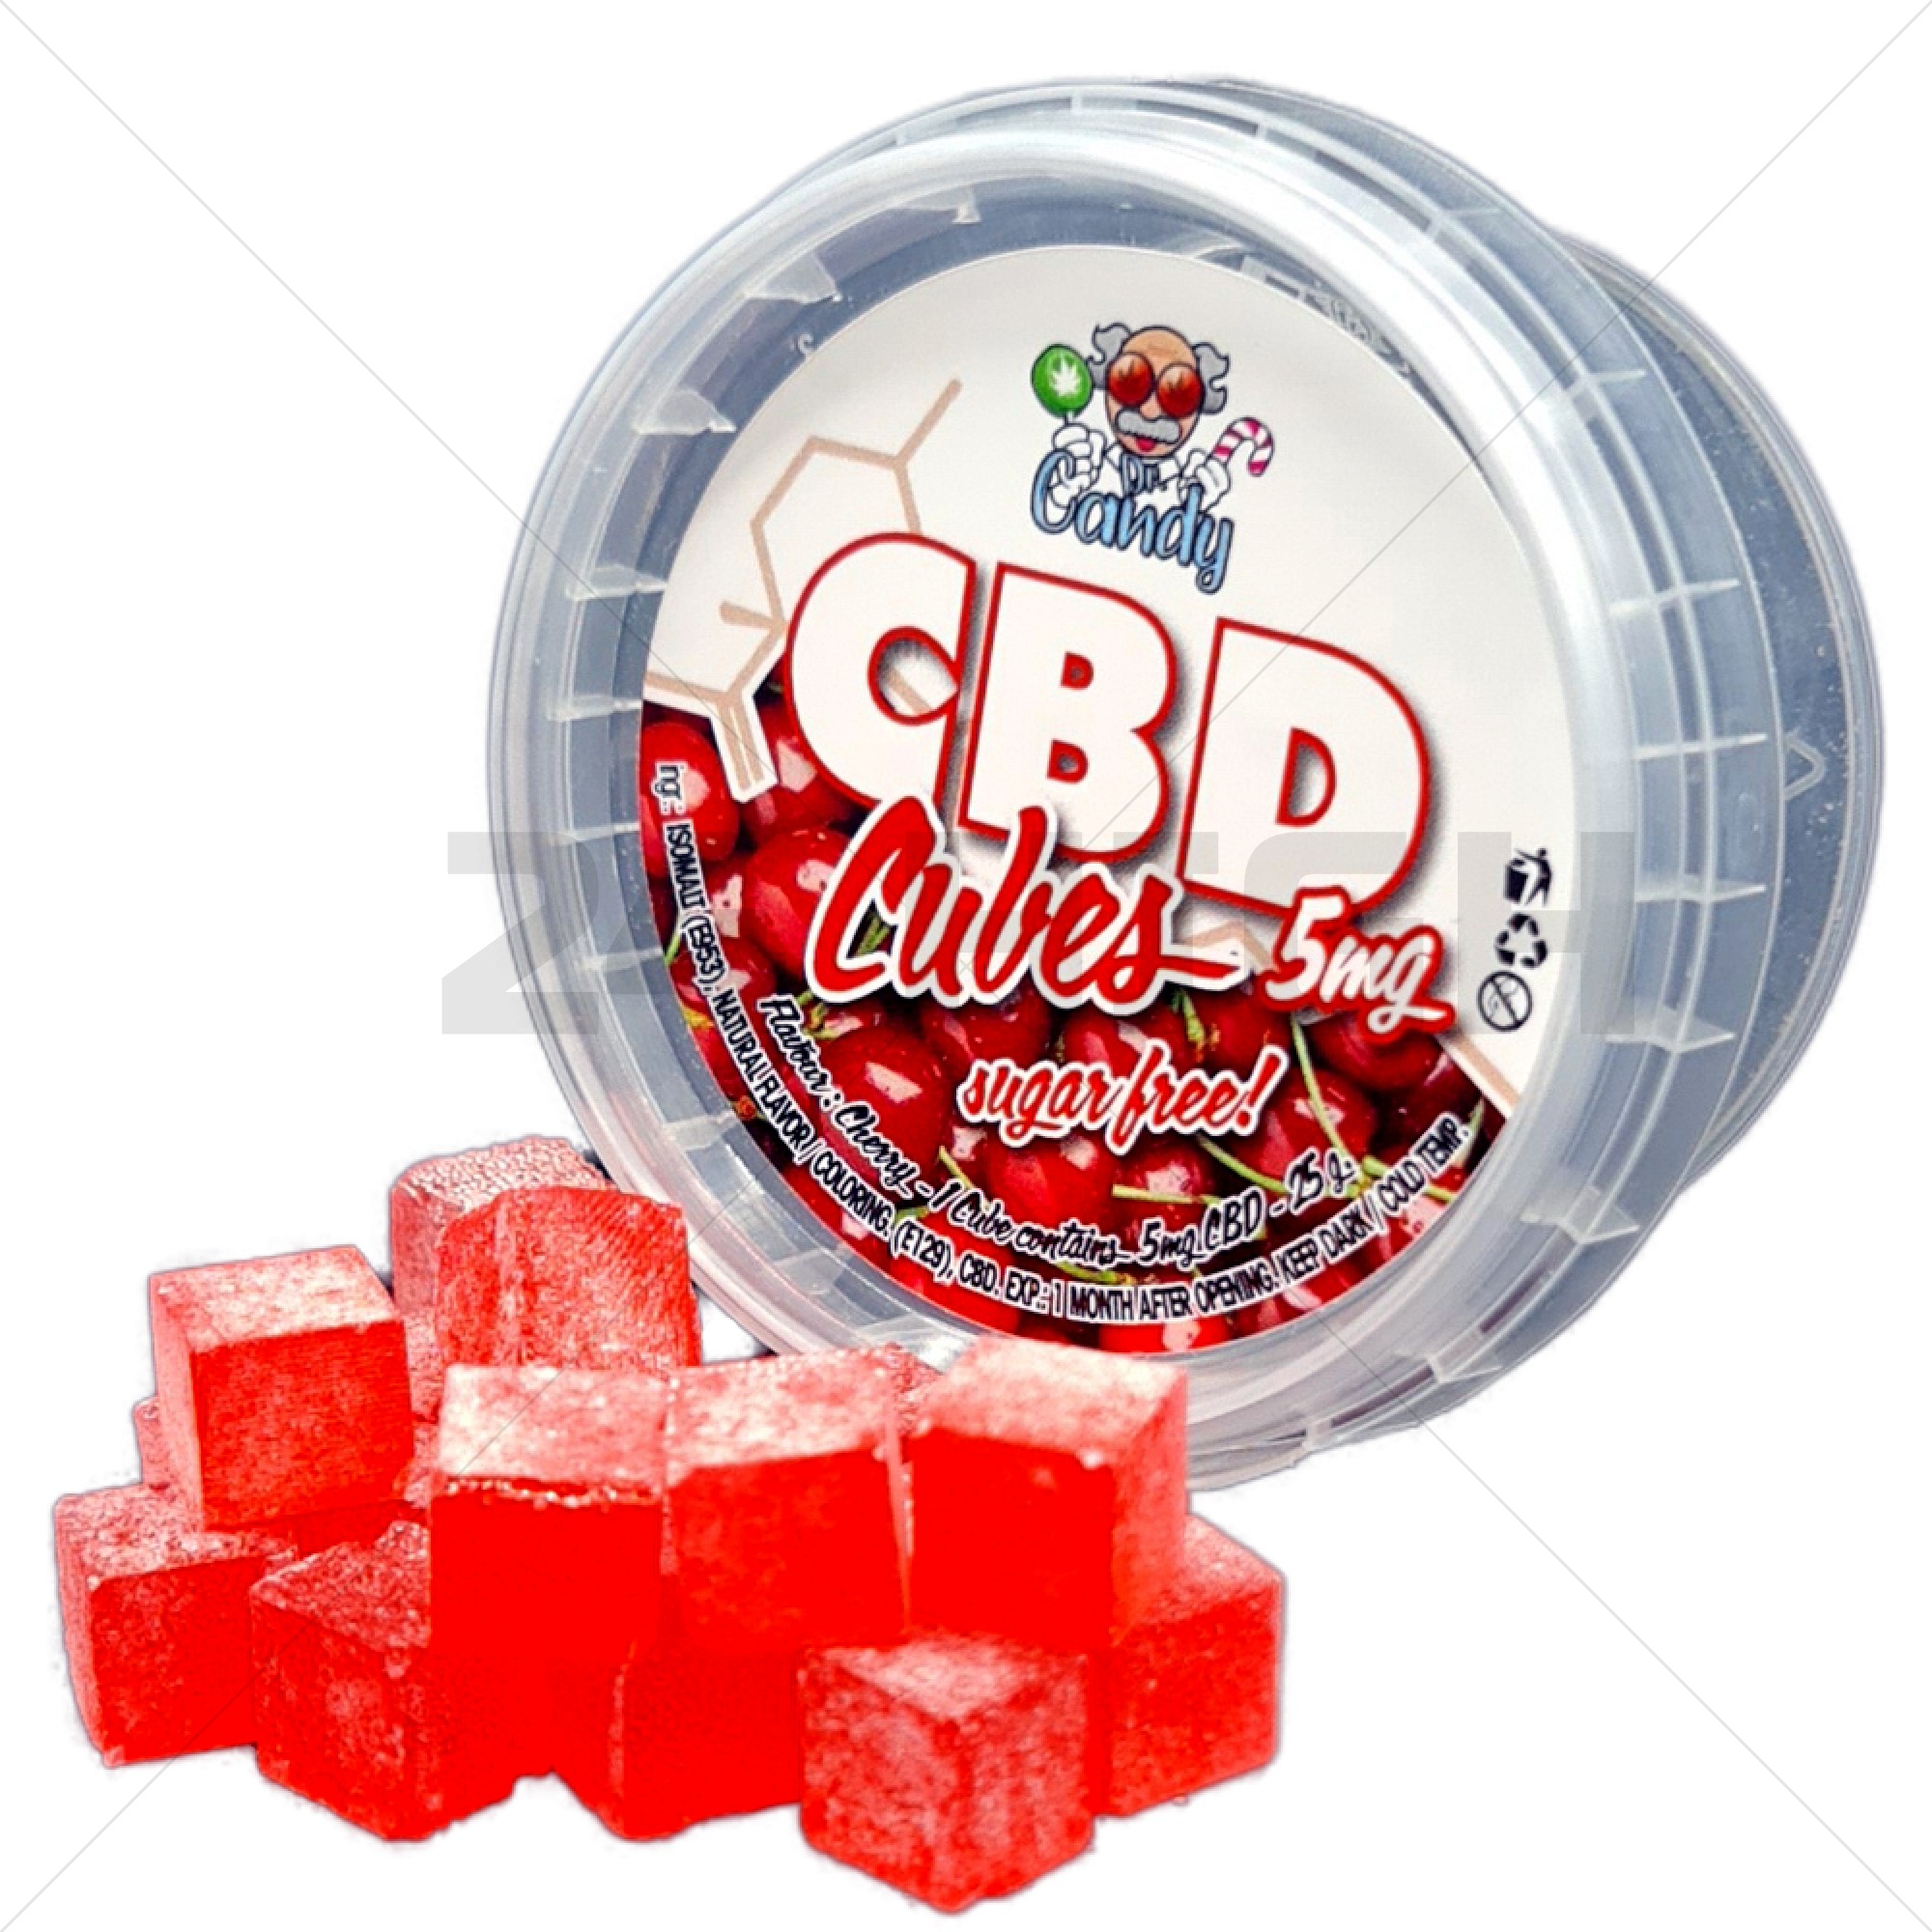 CBD Cubes - Kirsche